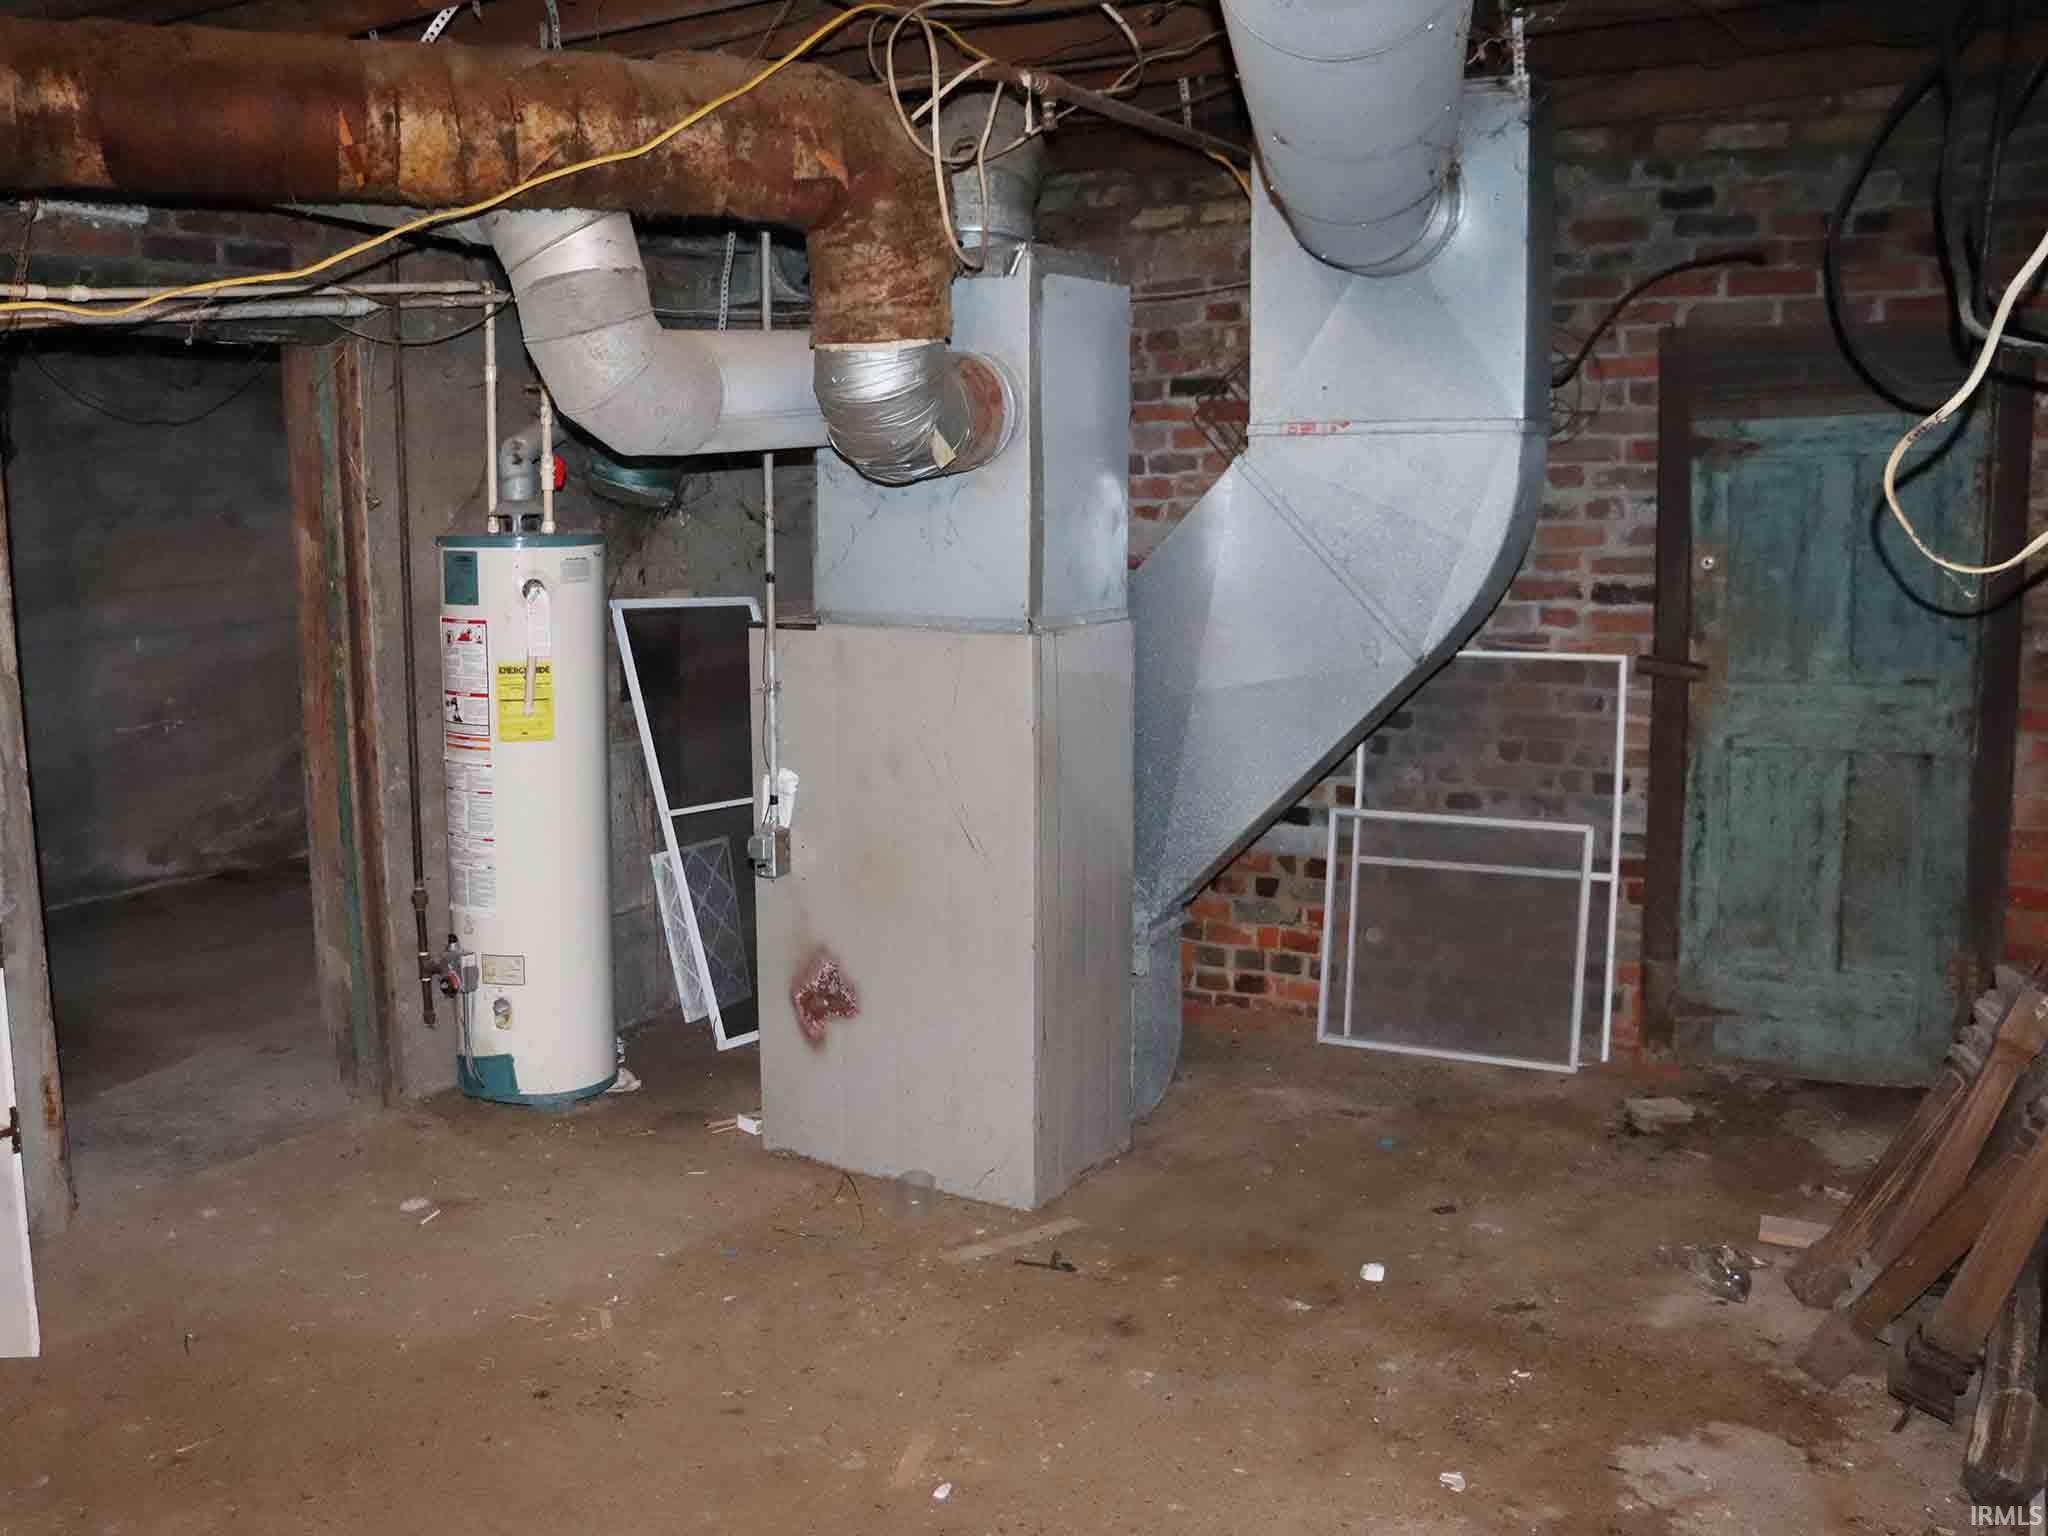 Basement furnace area.